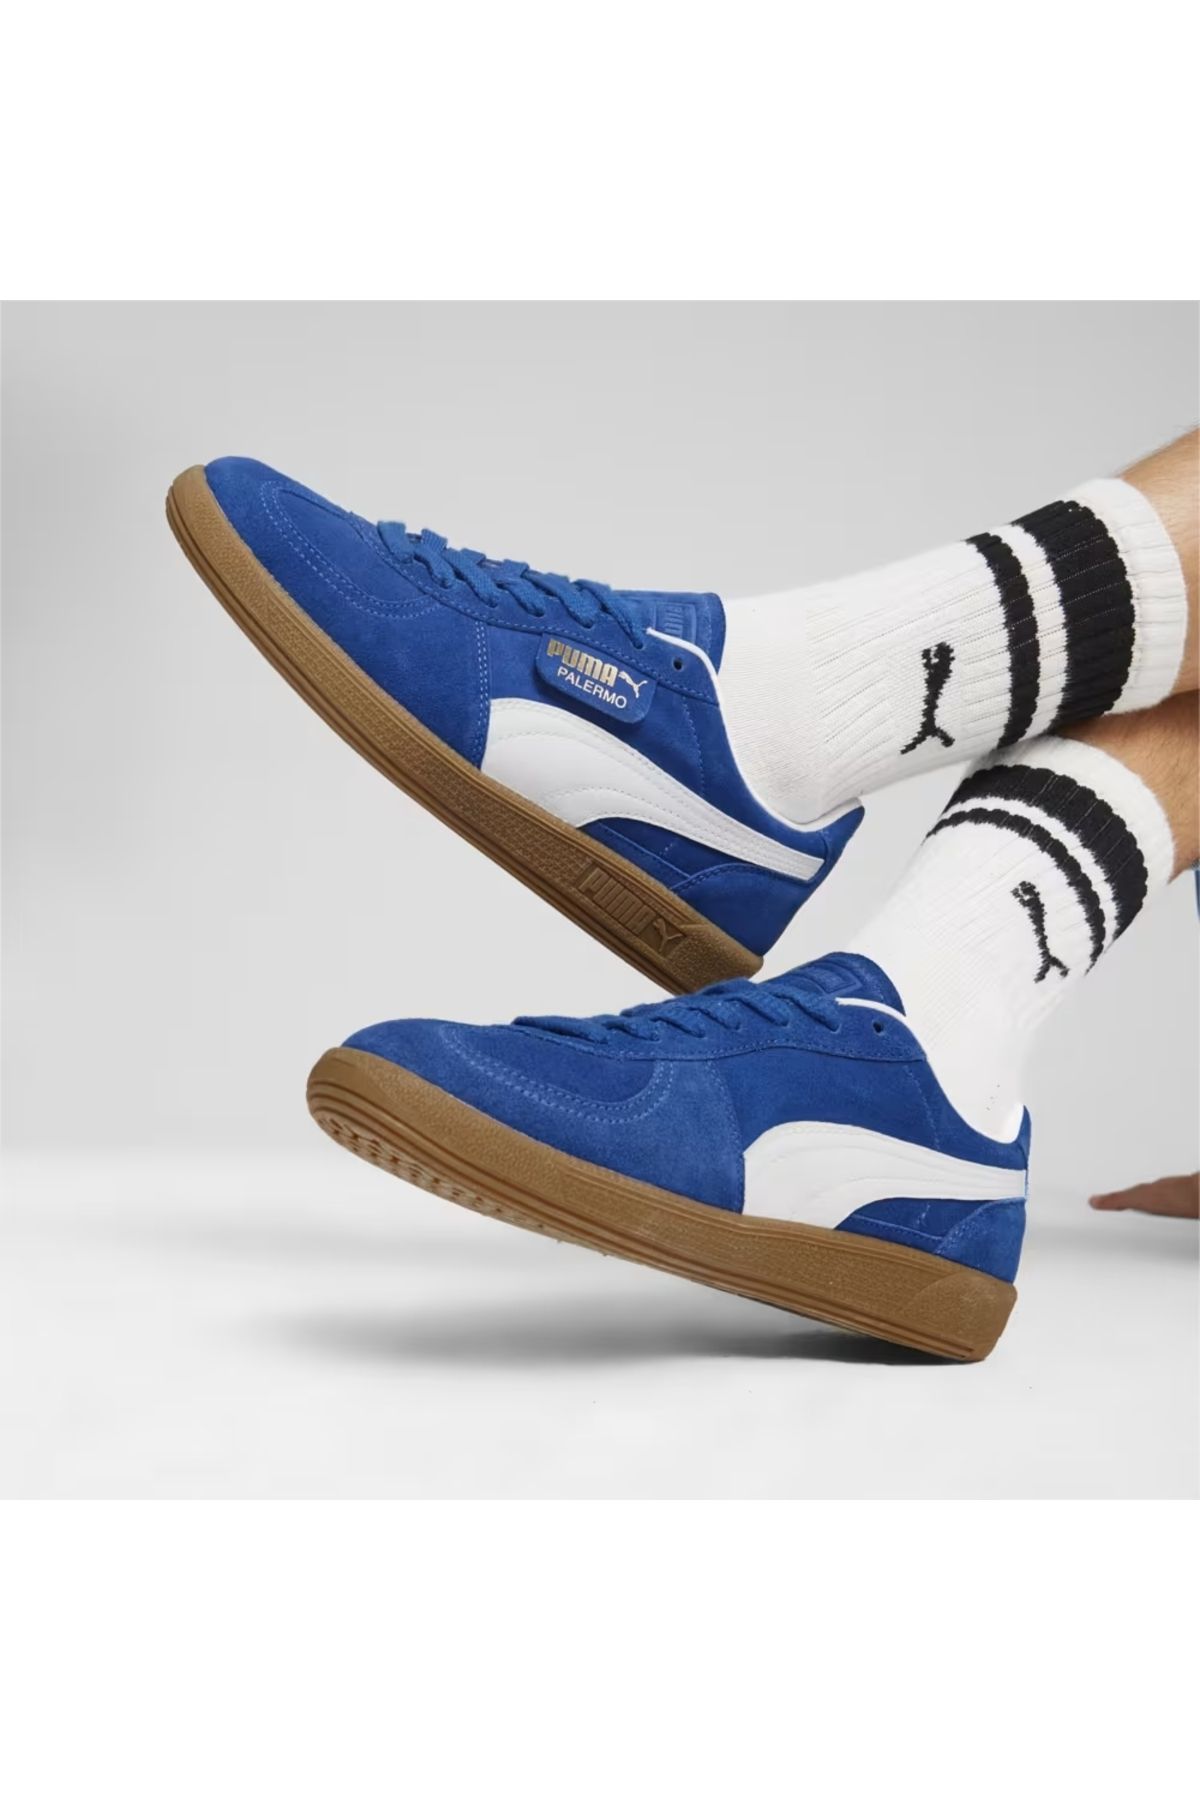 Puma Palermo Unisex Günlük Spor Ayakkabı Sneaker